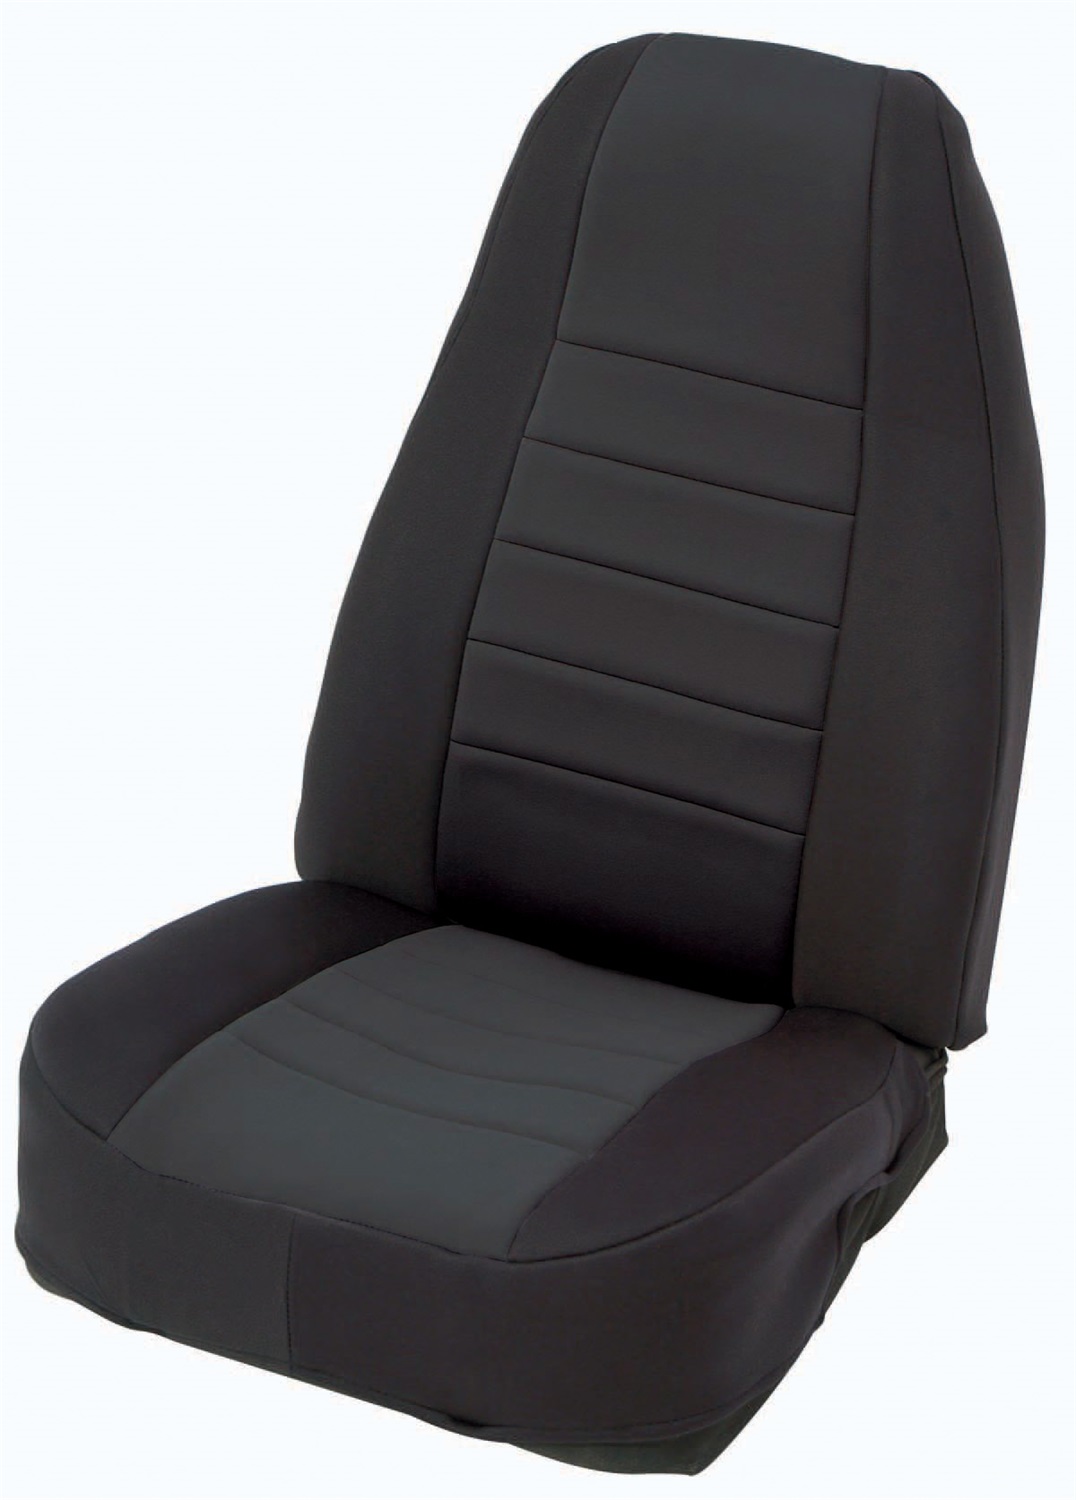 Smittybilt Smittybilt 47701 Neoprene Seat Cover Fits 13-14 Wrangler (JK)